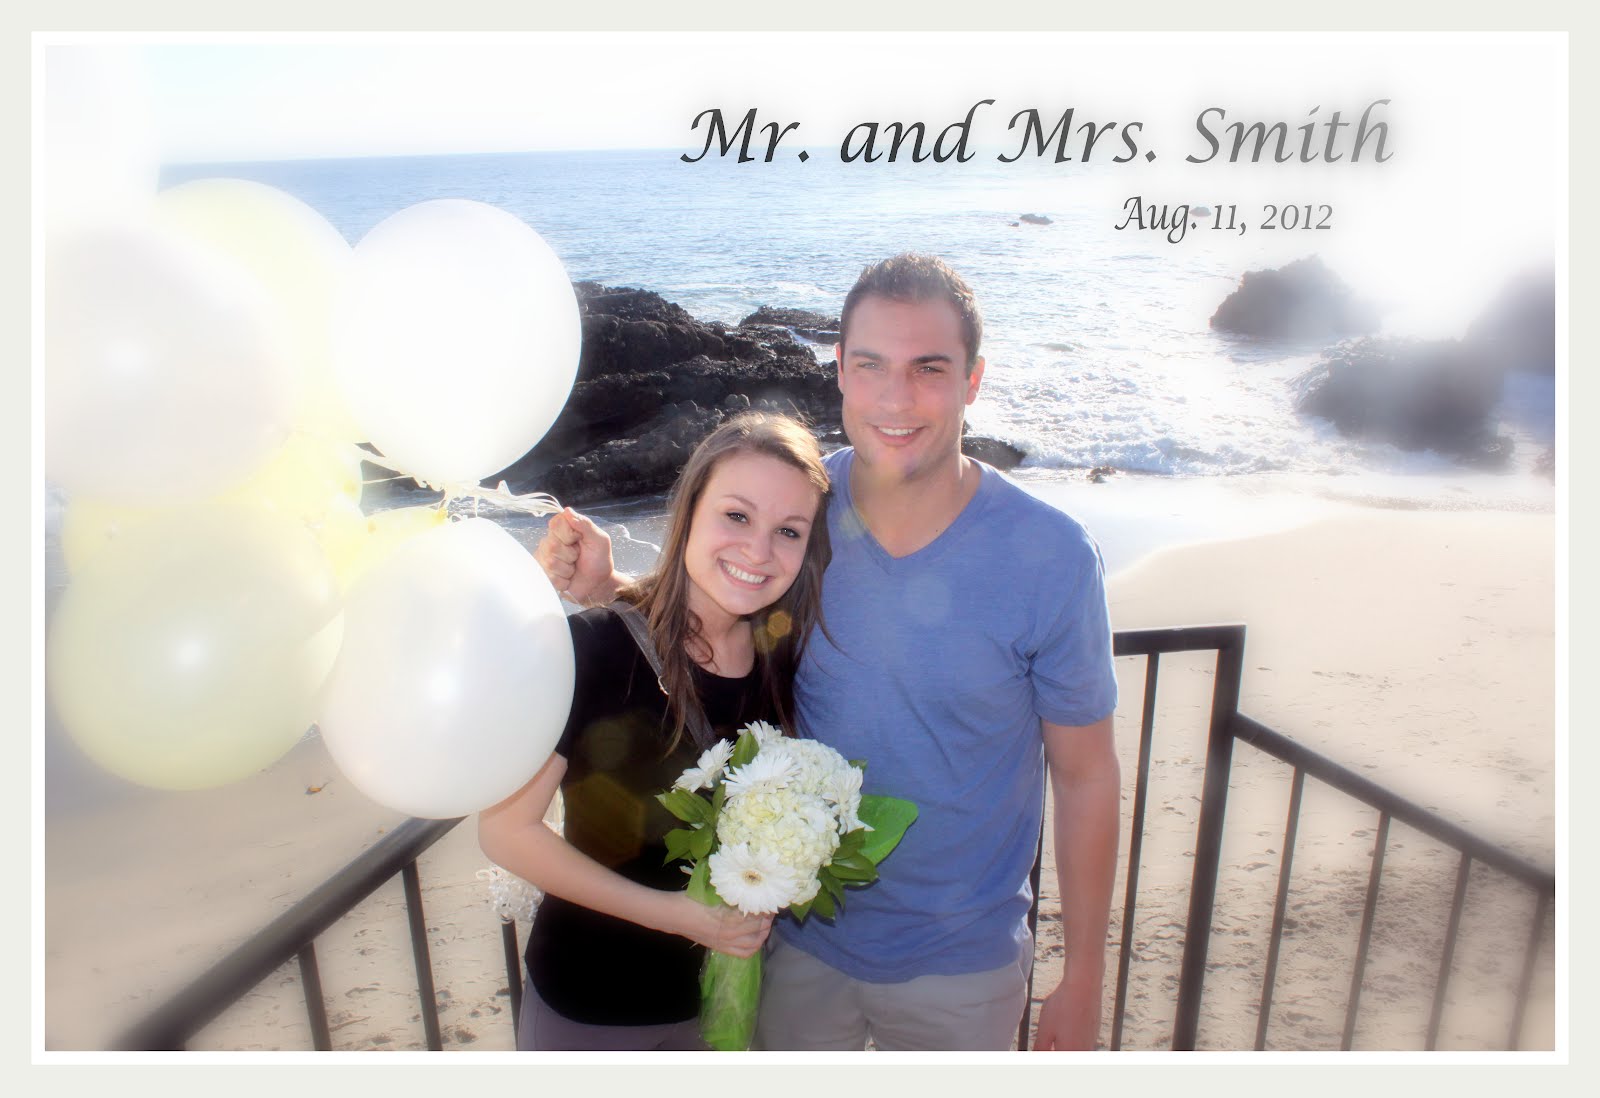 the future Mr. & Mrs. Smith